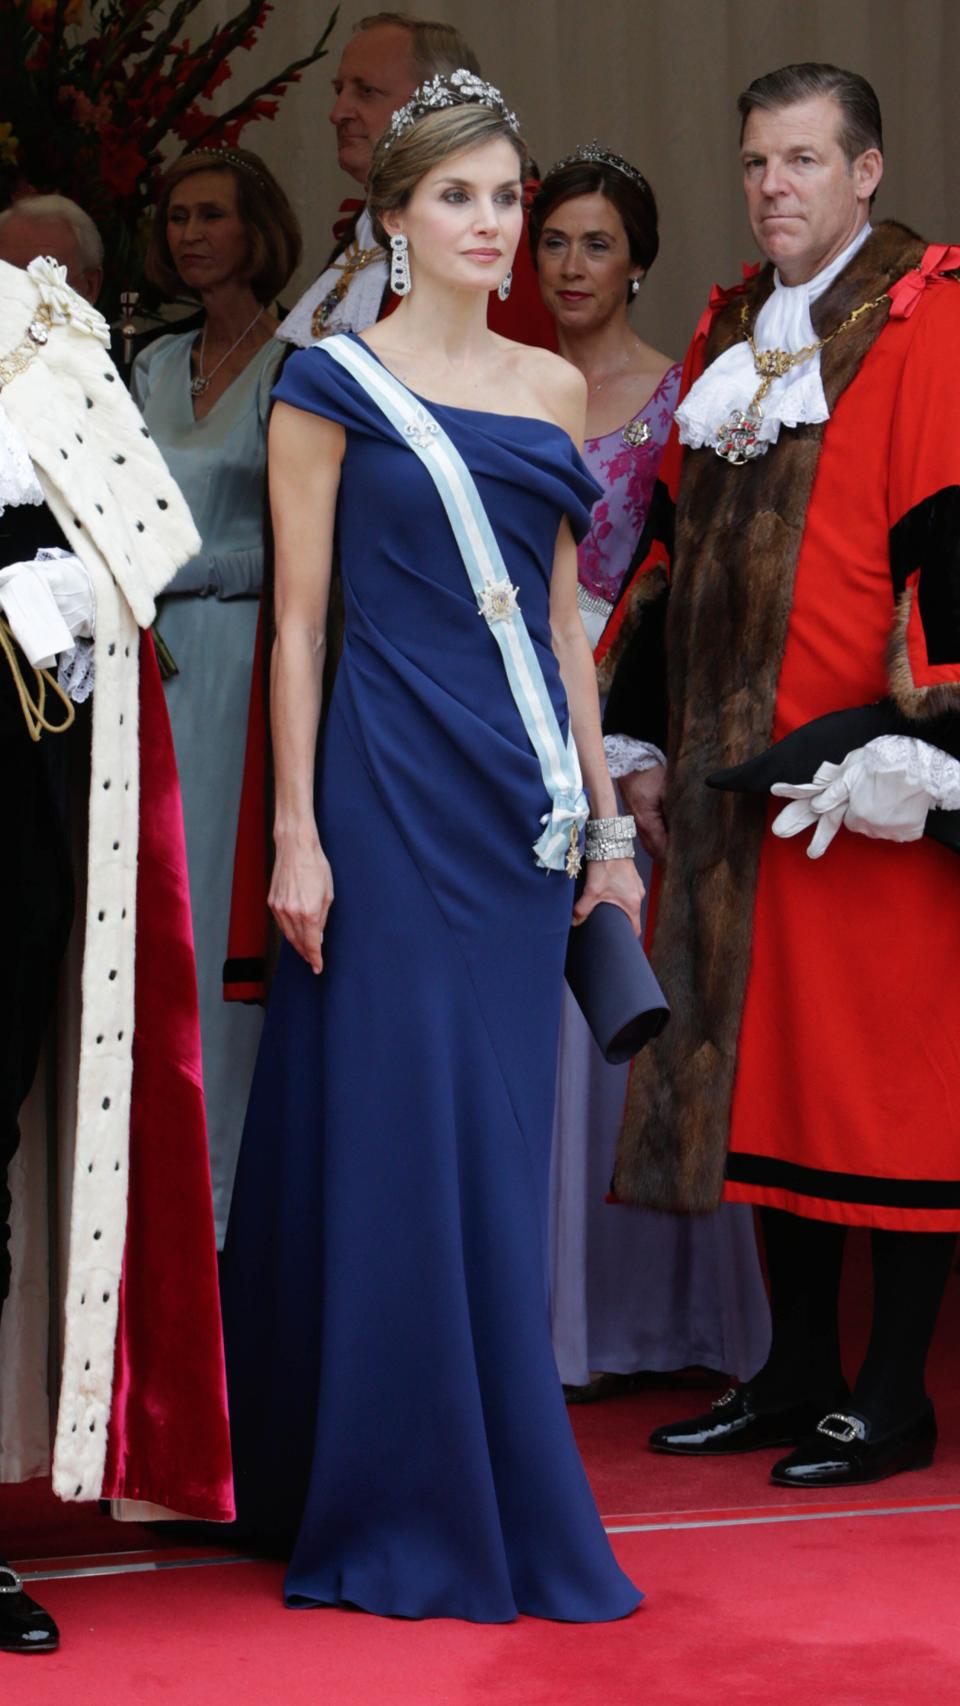 En julio de 2017 Letizia acudió a una cena de gala en honor a los Reyes de España con este impresionante vestido azul añil.